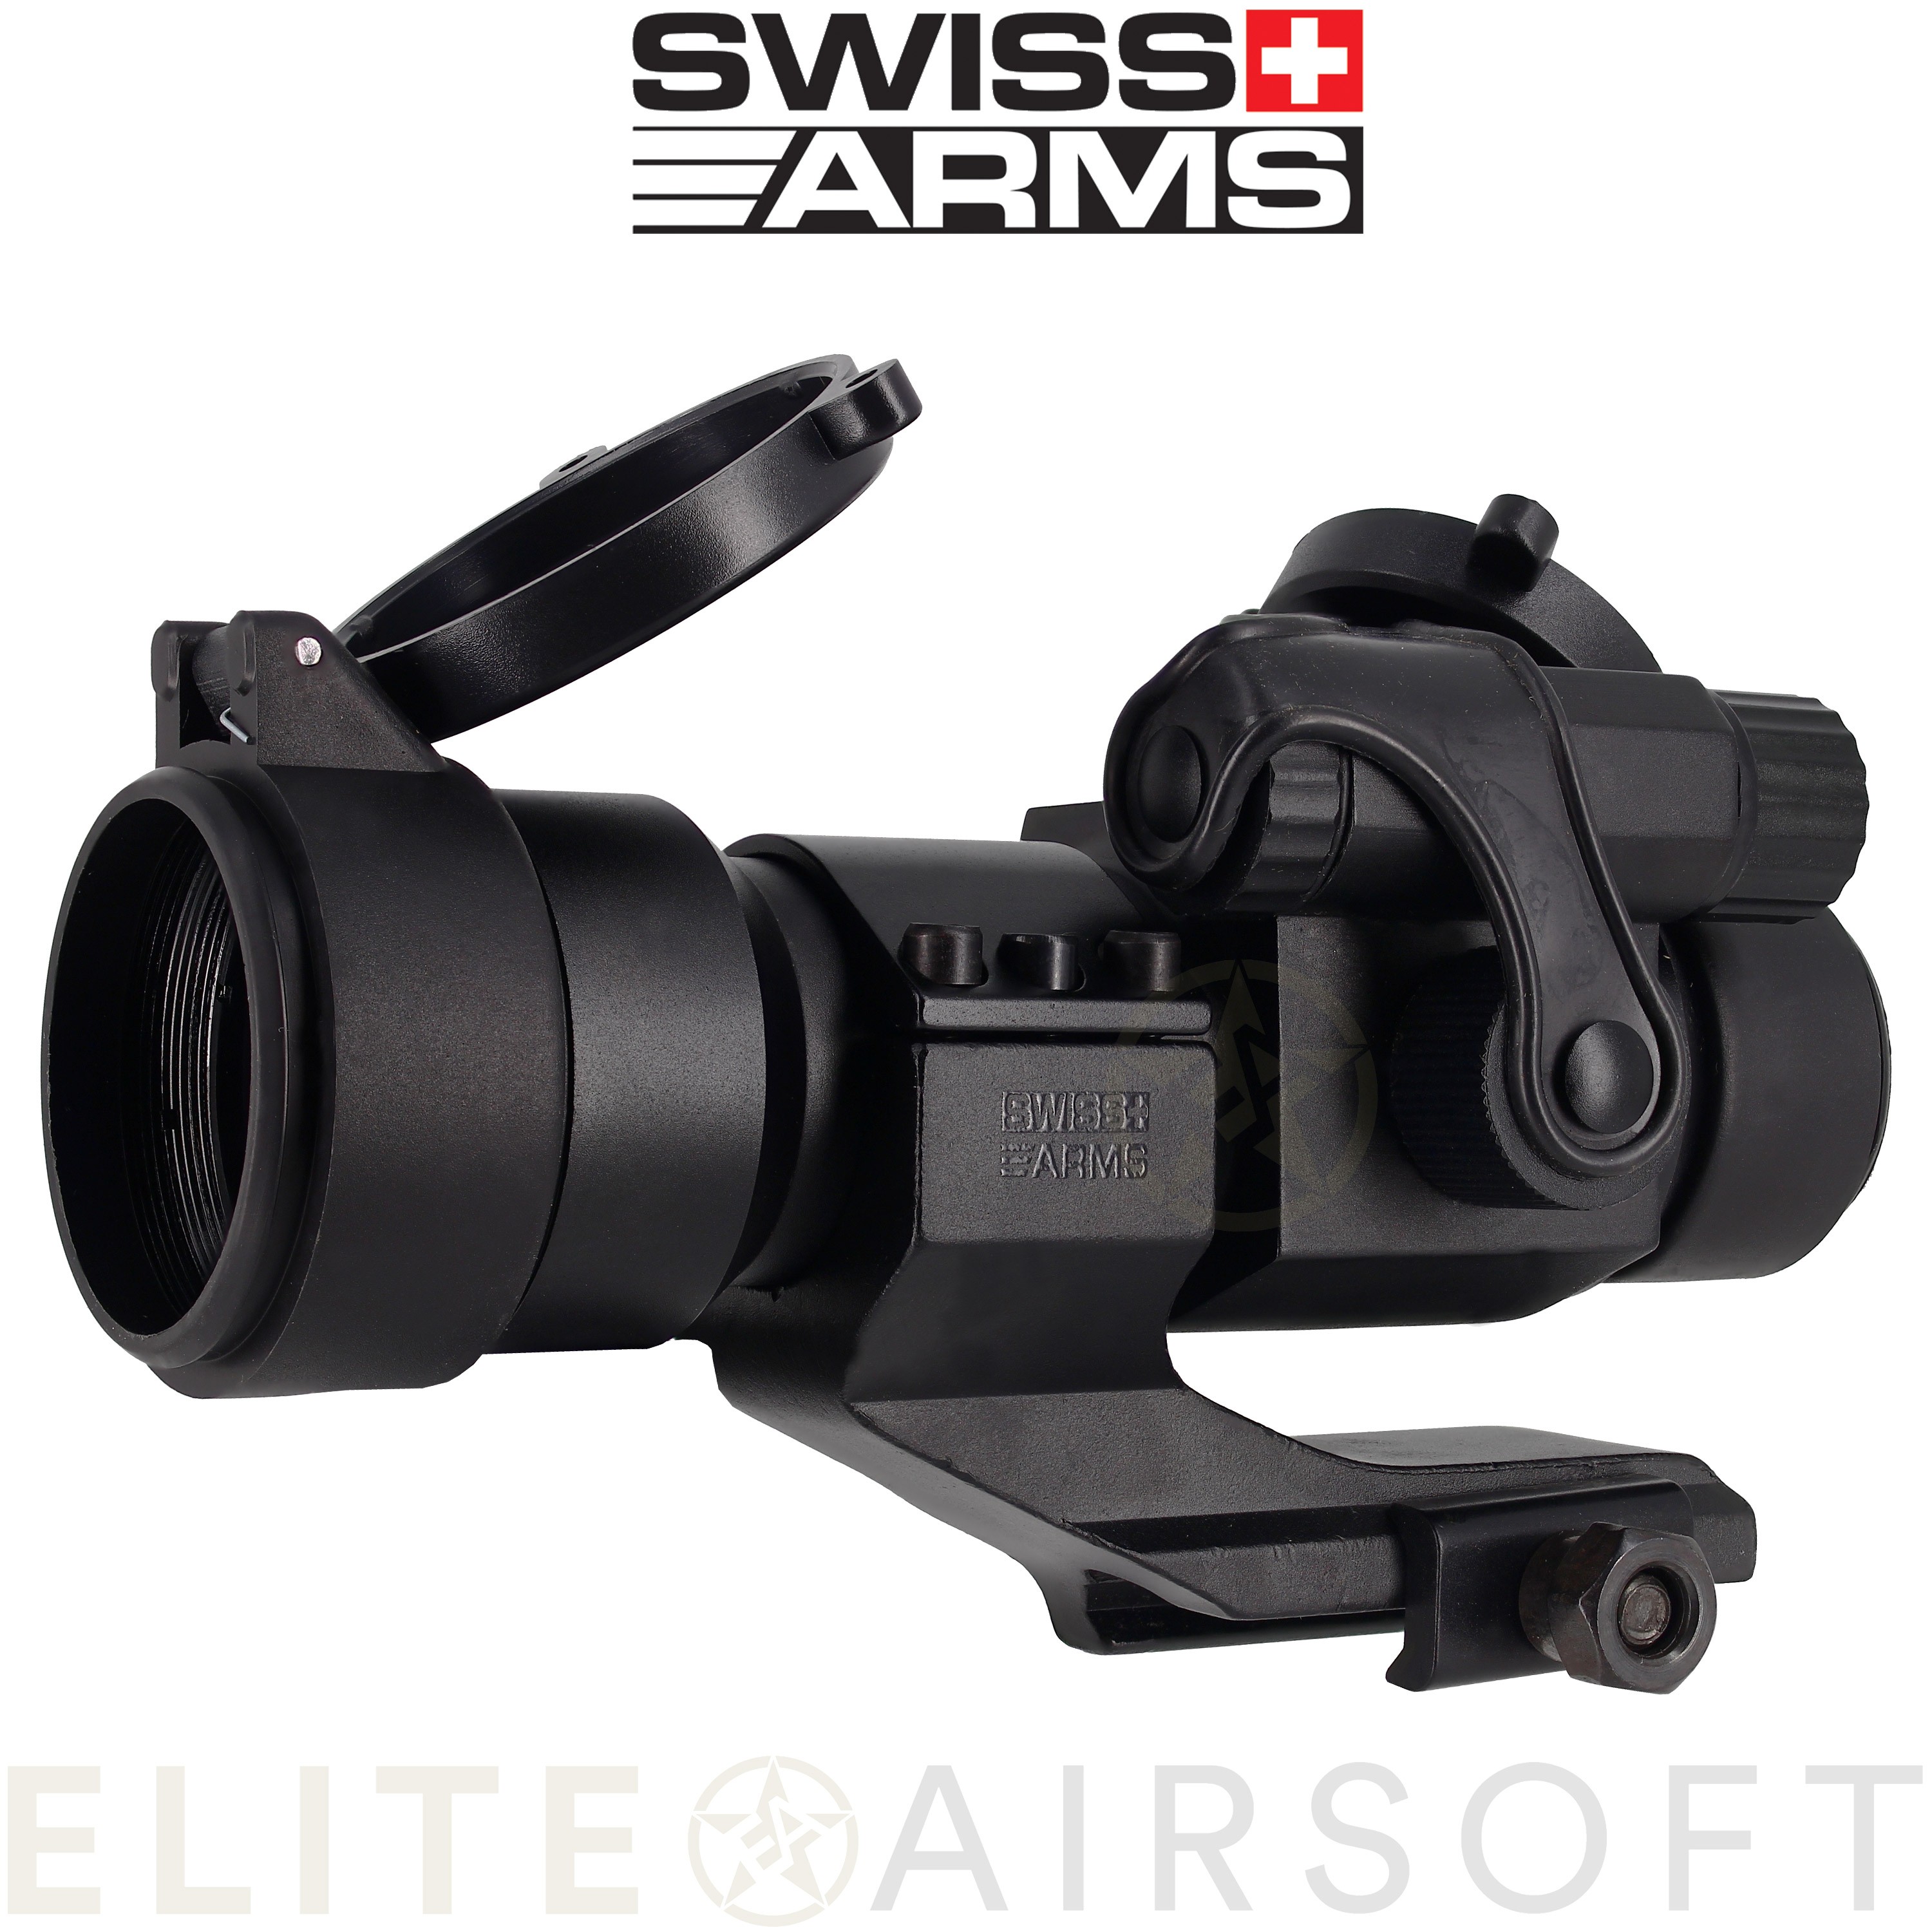 Swiss arms - Viseur point rouge type M3 - Noir - Elite Airsoft